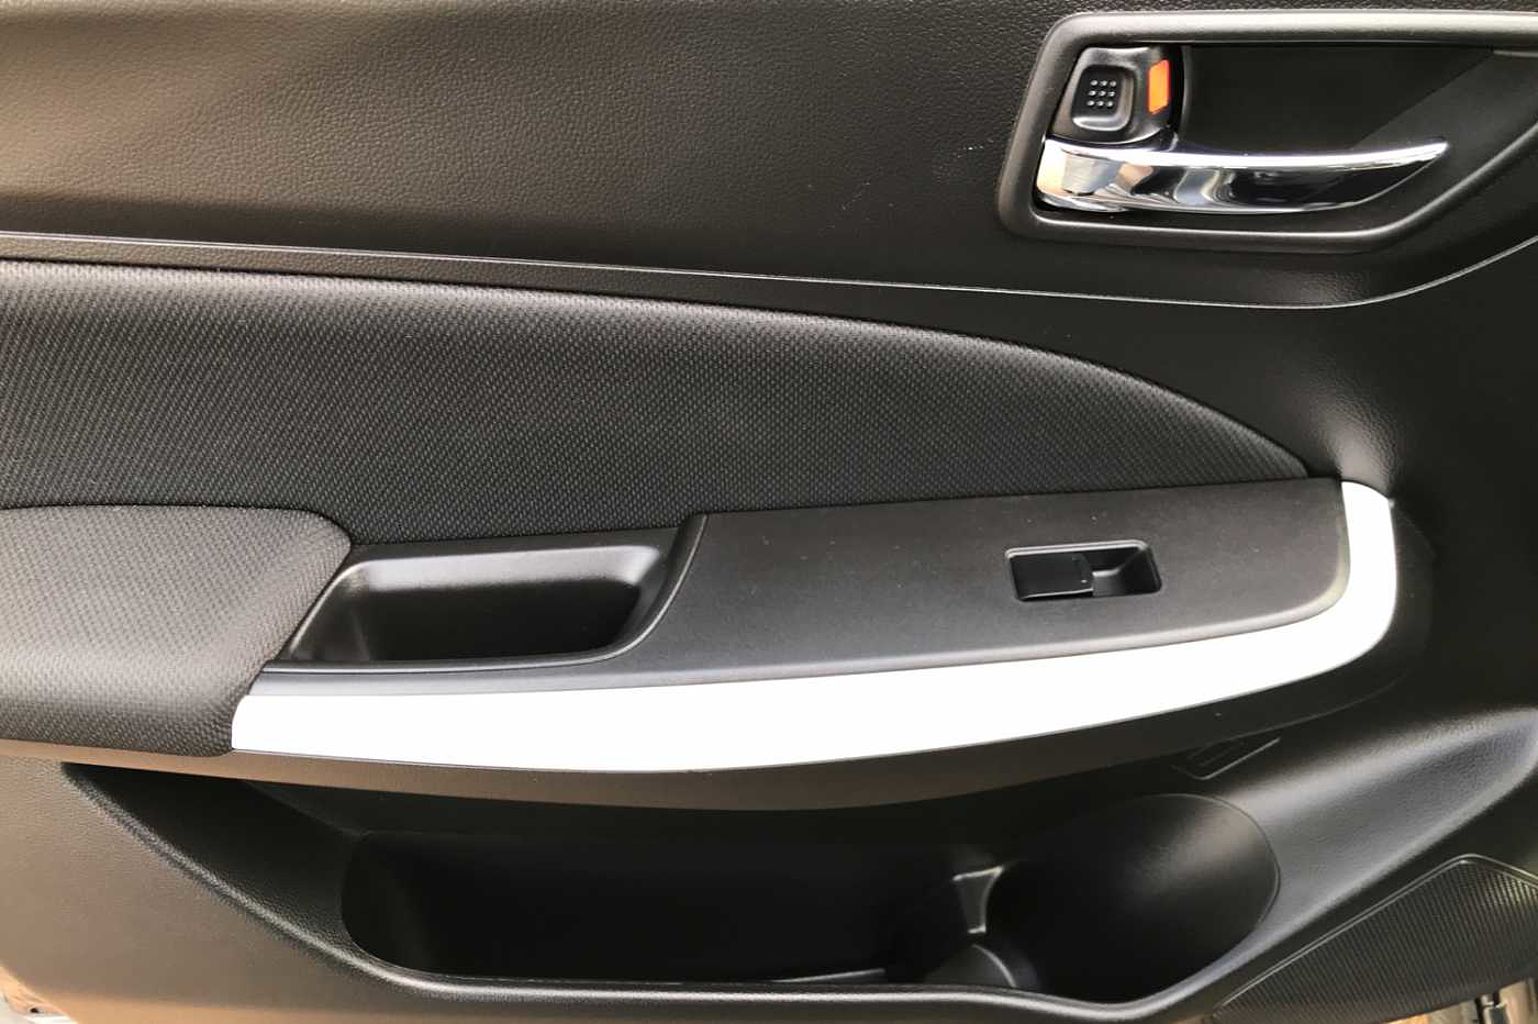 Suzuki Swift 5-Door Hatchback 1.2 Dualjet (90ps) Attitude